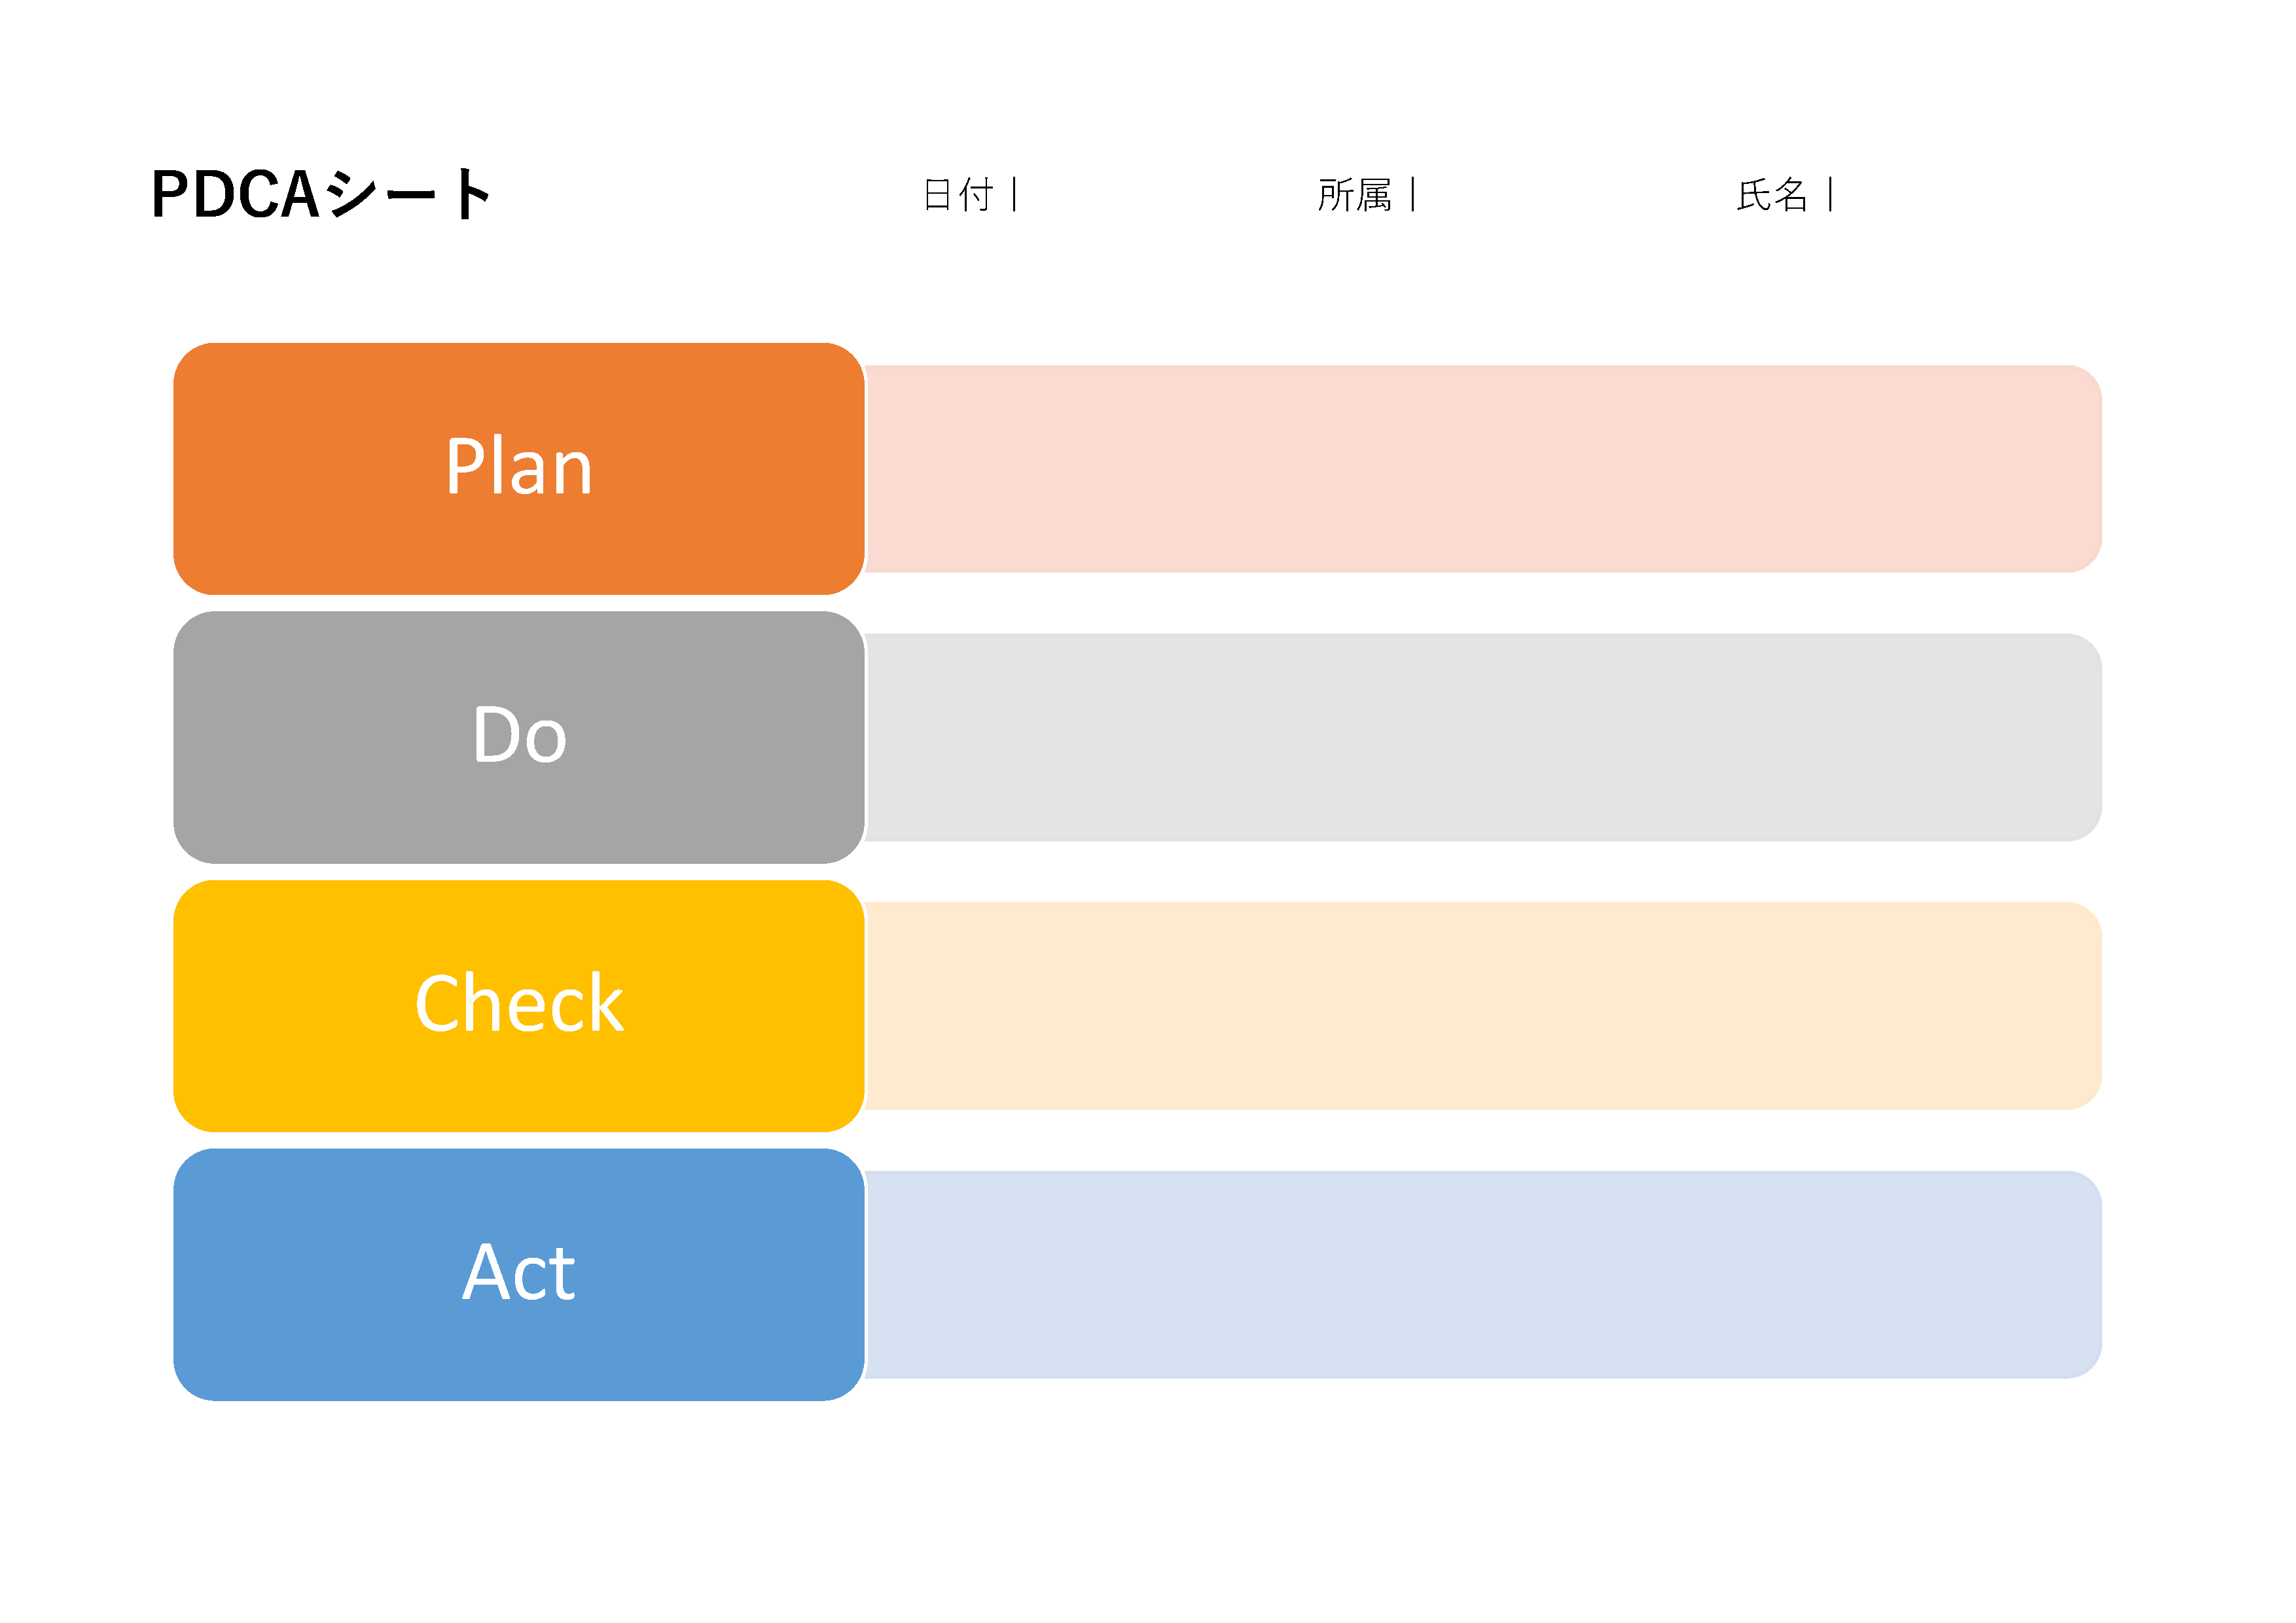 PDCAサイクルの各ステップを示す図。'Plan'がオレンジ、'Do'がグレー、'Check'がイエロー、'Act'がブルーで色分けされています。